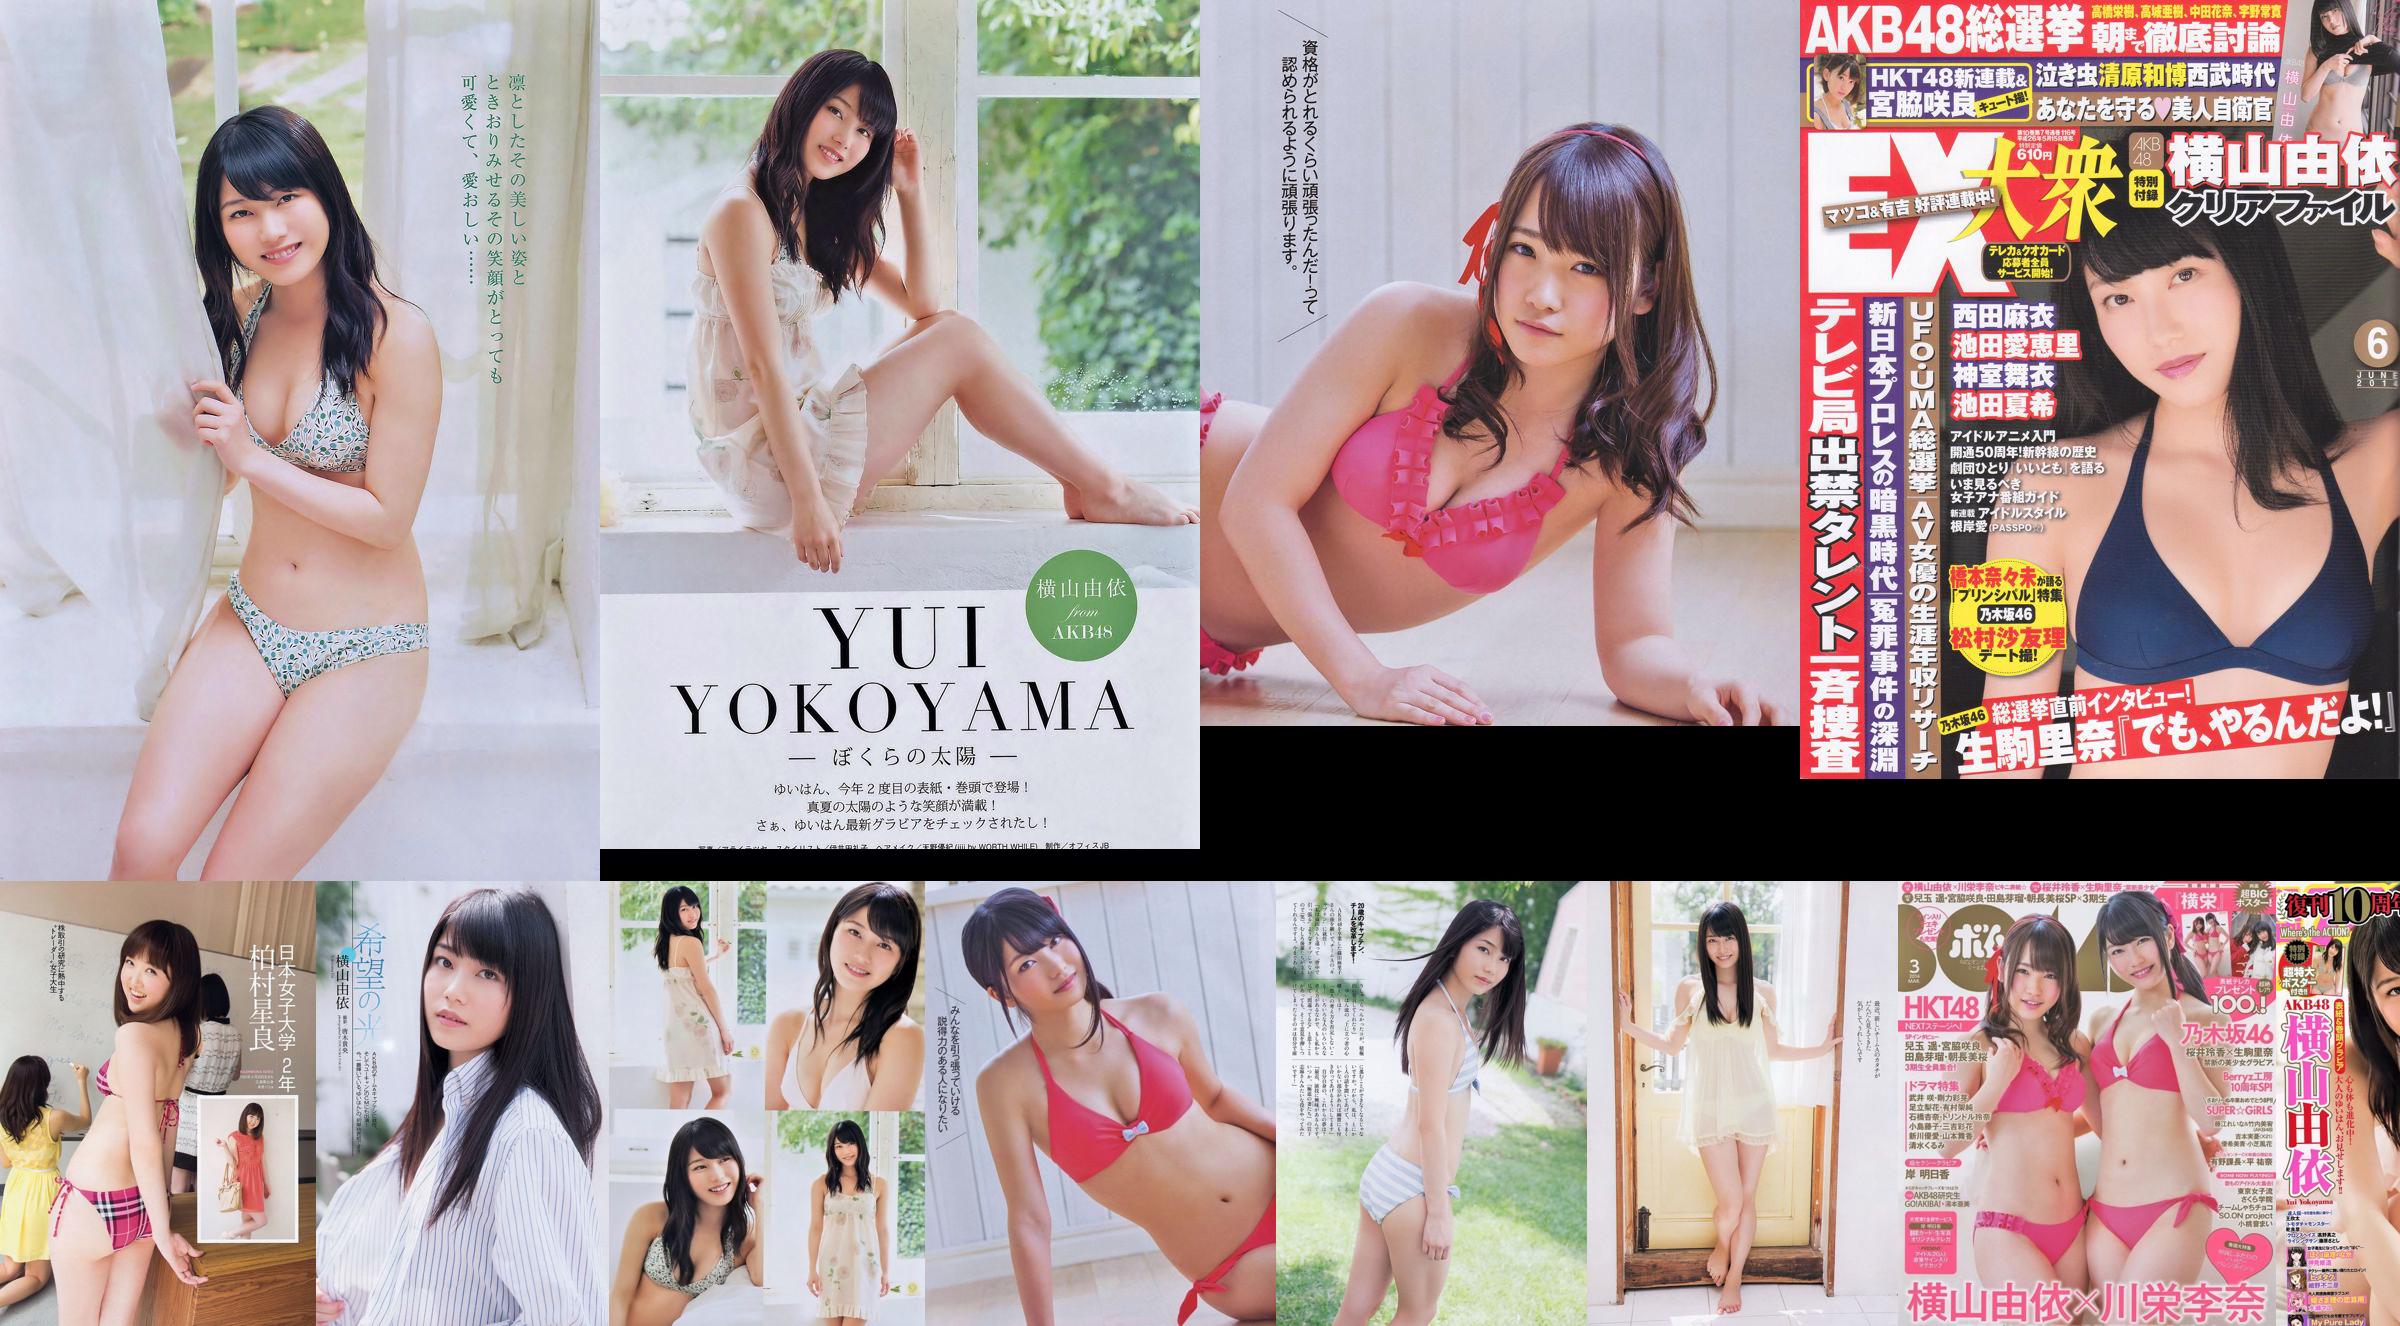 Momoiro Clover Z Yui Yokoyama Yua Shinkawa Mio Uema Anri Sugihara Kumi Yagami [Wekelijkse Playboy] 2013 No.20 Foto Moshi No.0b2ea4 Pagina 13